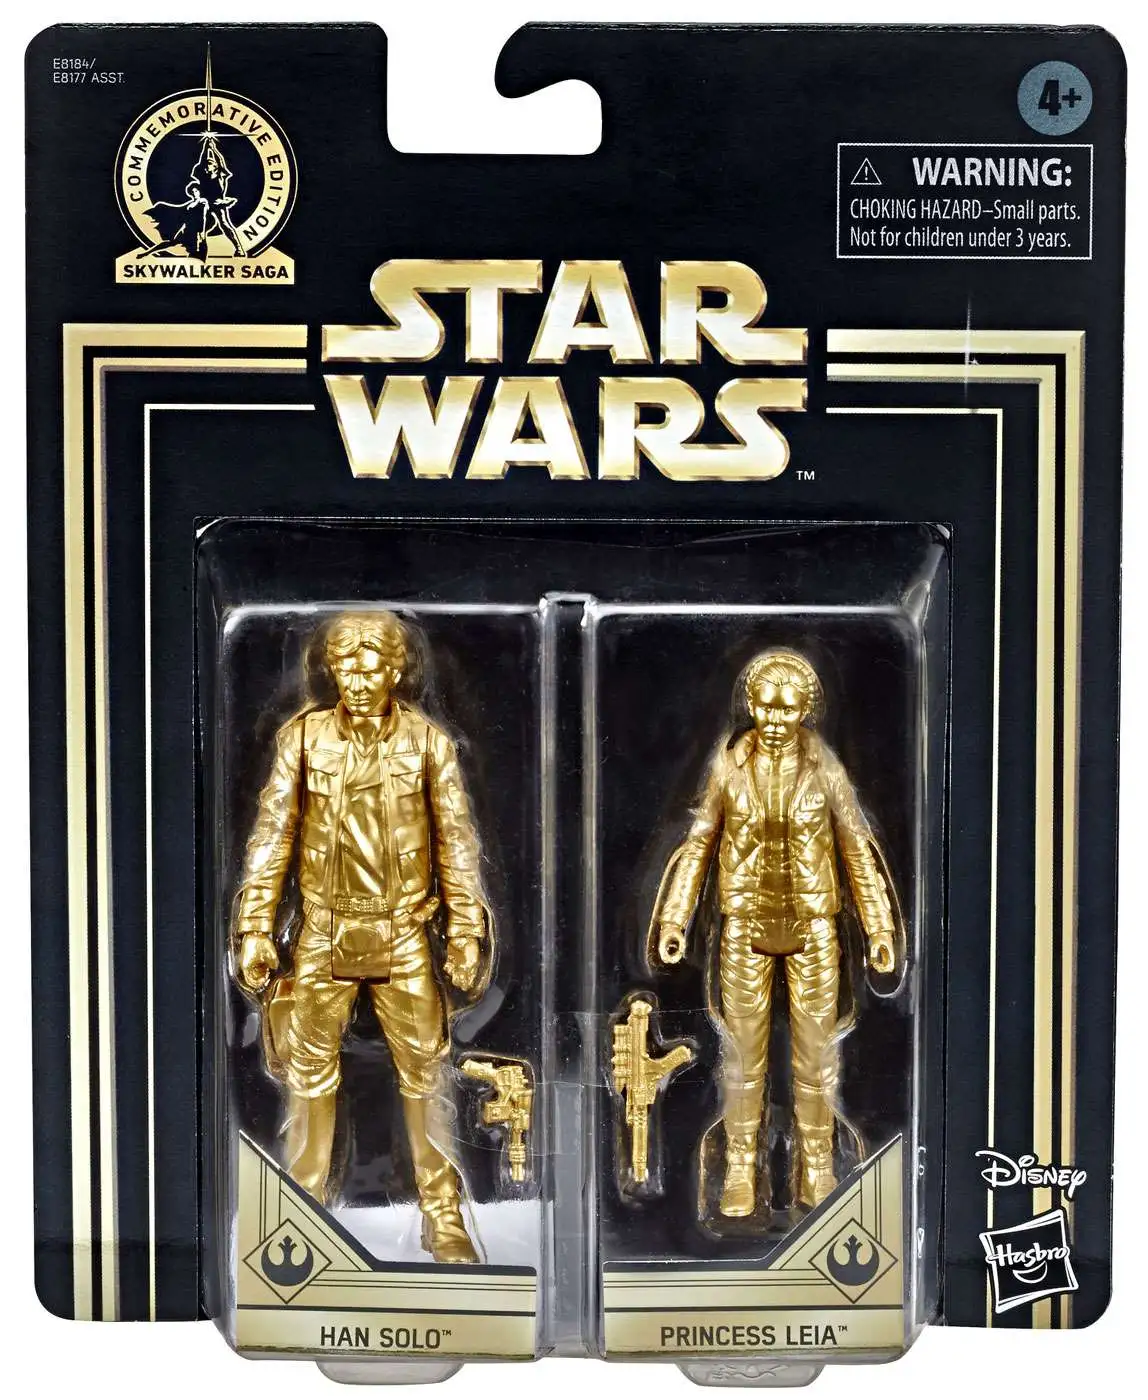 Star Wars Commemorative Edition Skywalker Saga Finn & Poe Dameron gold 